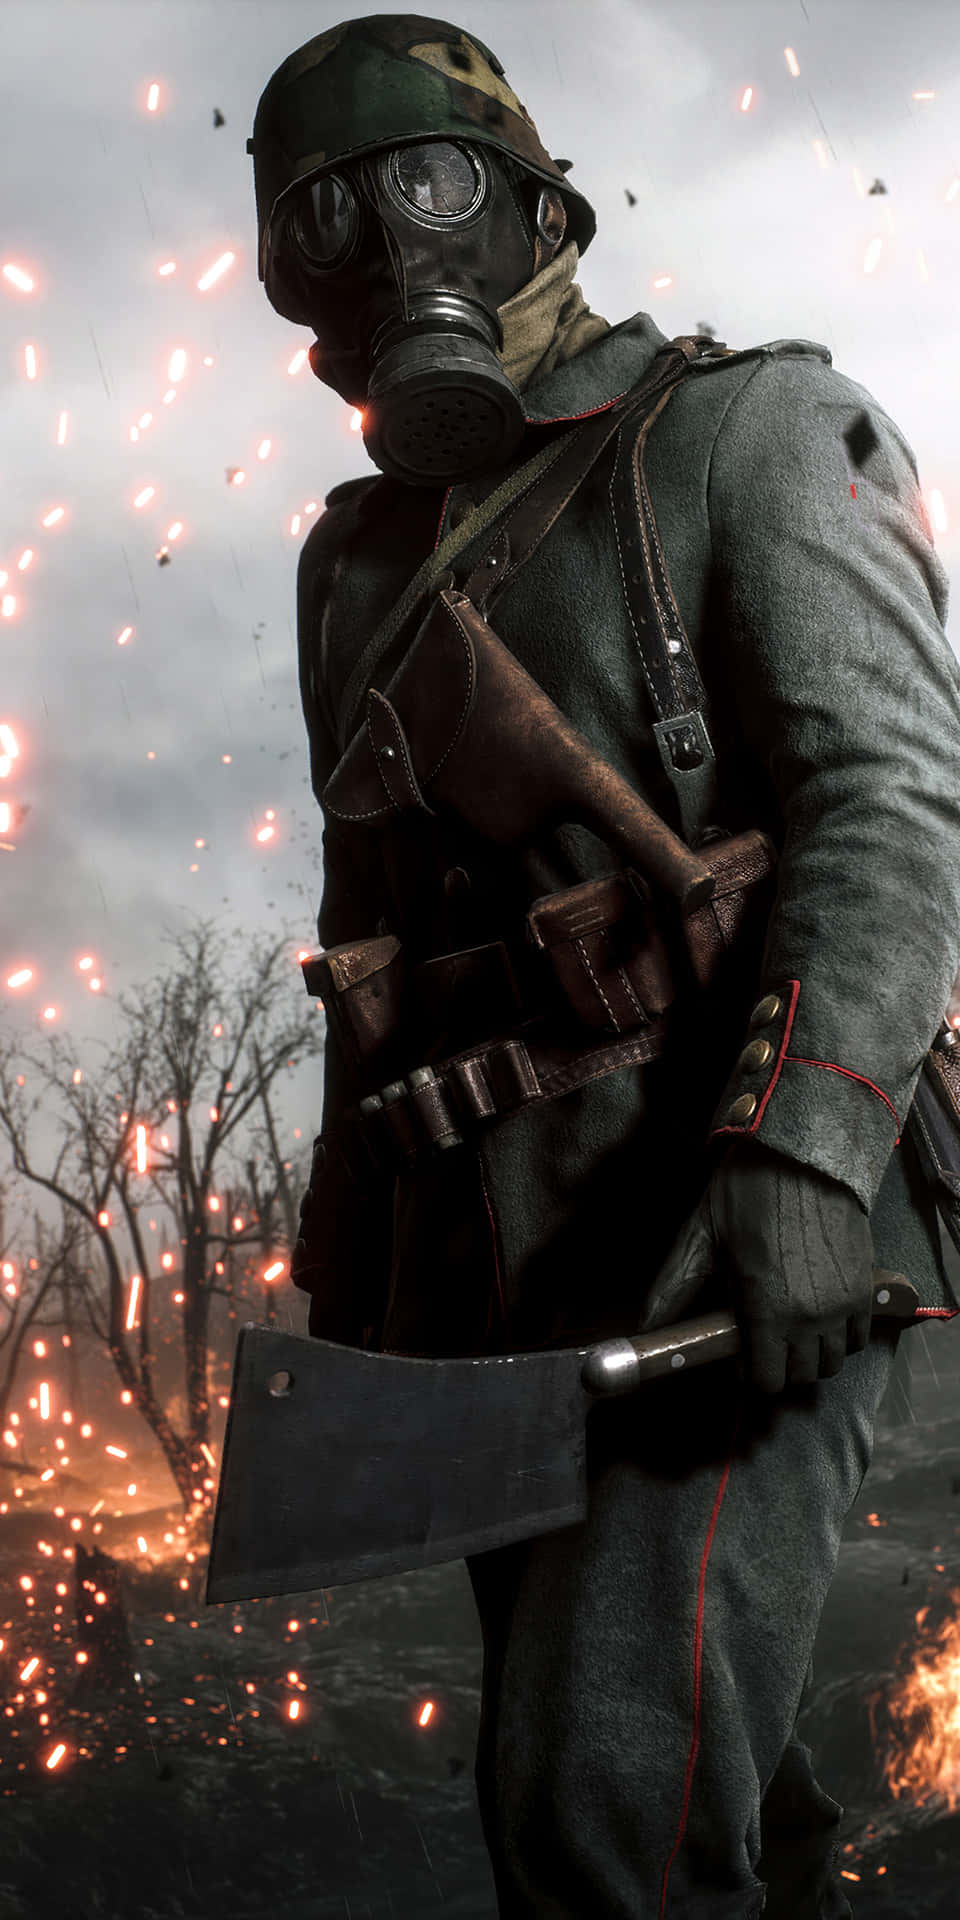 Pixel3xl Bakgrundsbild Med Battlefield 1 Motiv, Soldat Som Håller En Yxa.